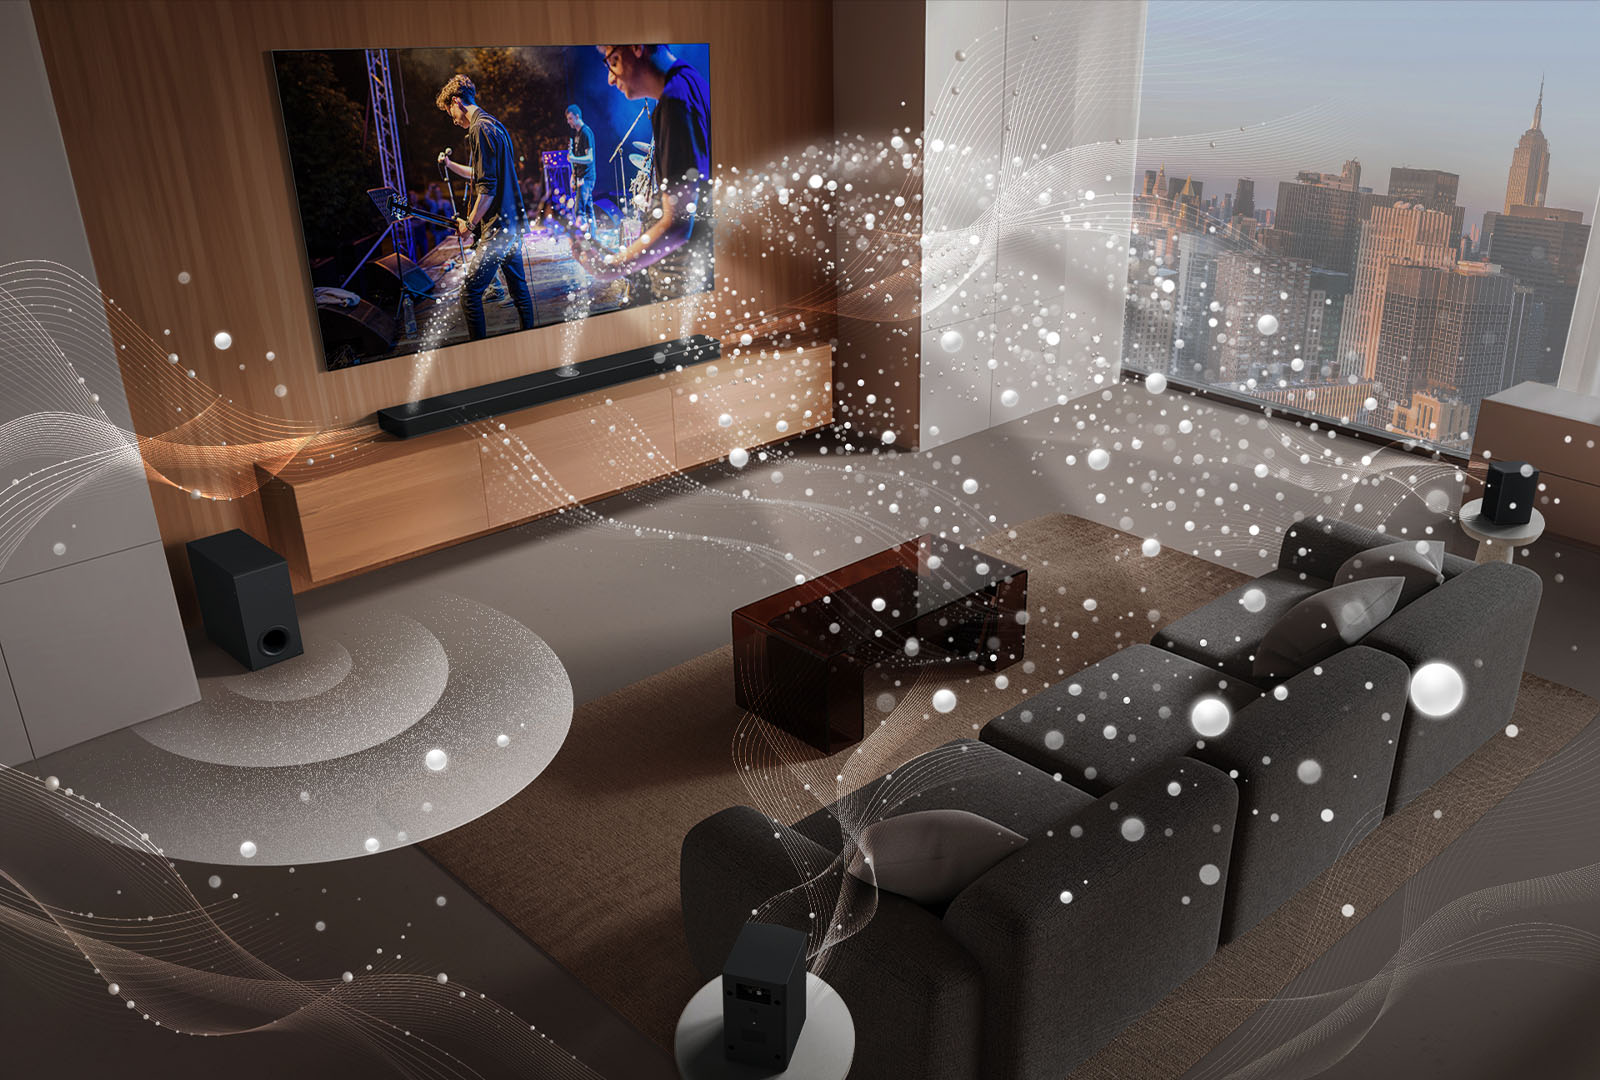 LG TV, LG Soundbar, hintere Lautsprecher und ein Subwoofer befinden sich in einem Wohnzimmer in einem Wolkenkratzer und spielen eine Musikaufführung. Weiße, aus Tröpfchen bestehende Klangwellen werden von der Soundbar und den hinteren Lautsprechern projiziert und um das Sofa und den Wohnraum geschlungen. Ein Subwoofer erzeugt einen Klangeffekt von unten. Dolby Atmos-Logo DTS X-Logo